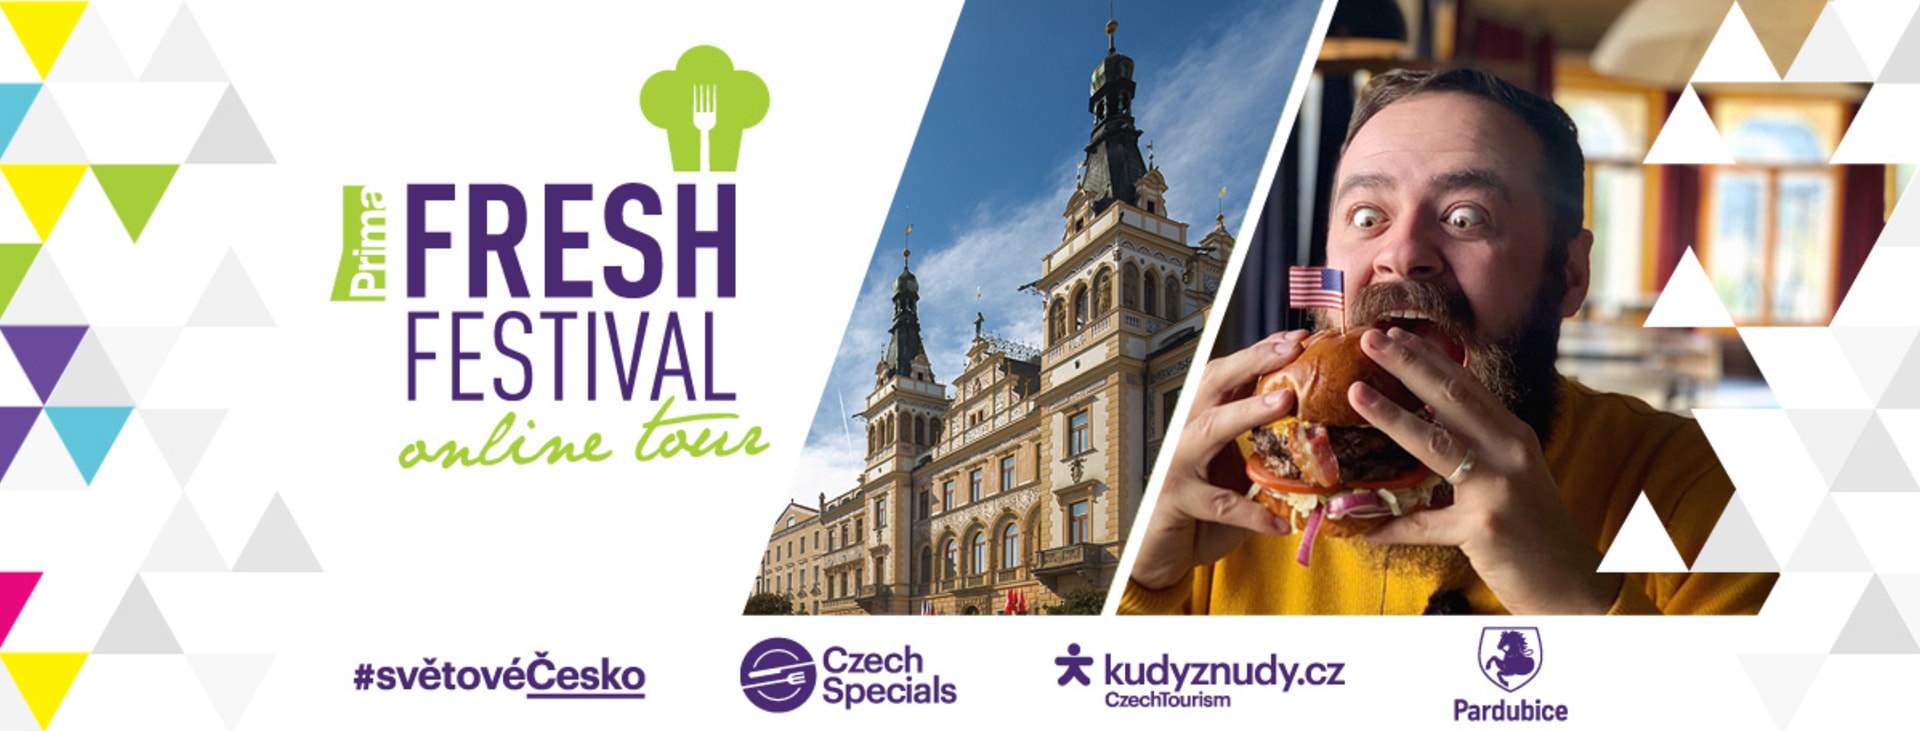 Fresh Festival online tour - východní Čechy 5